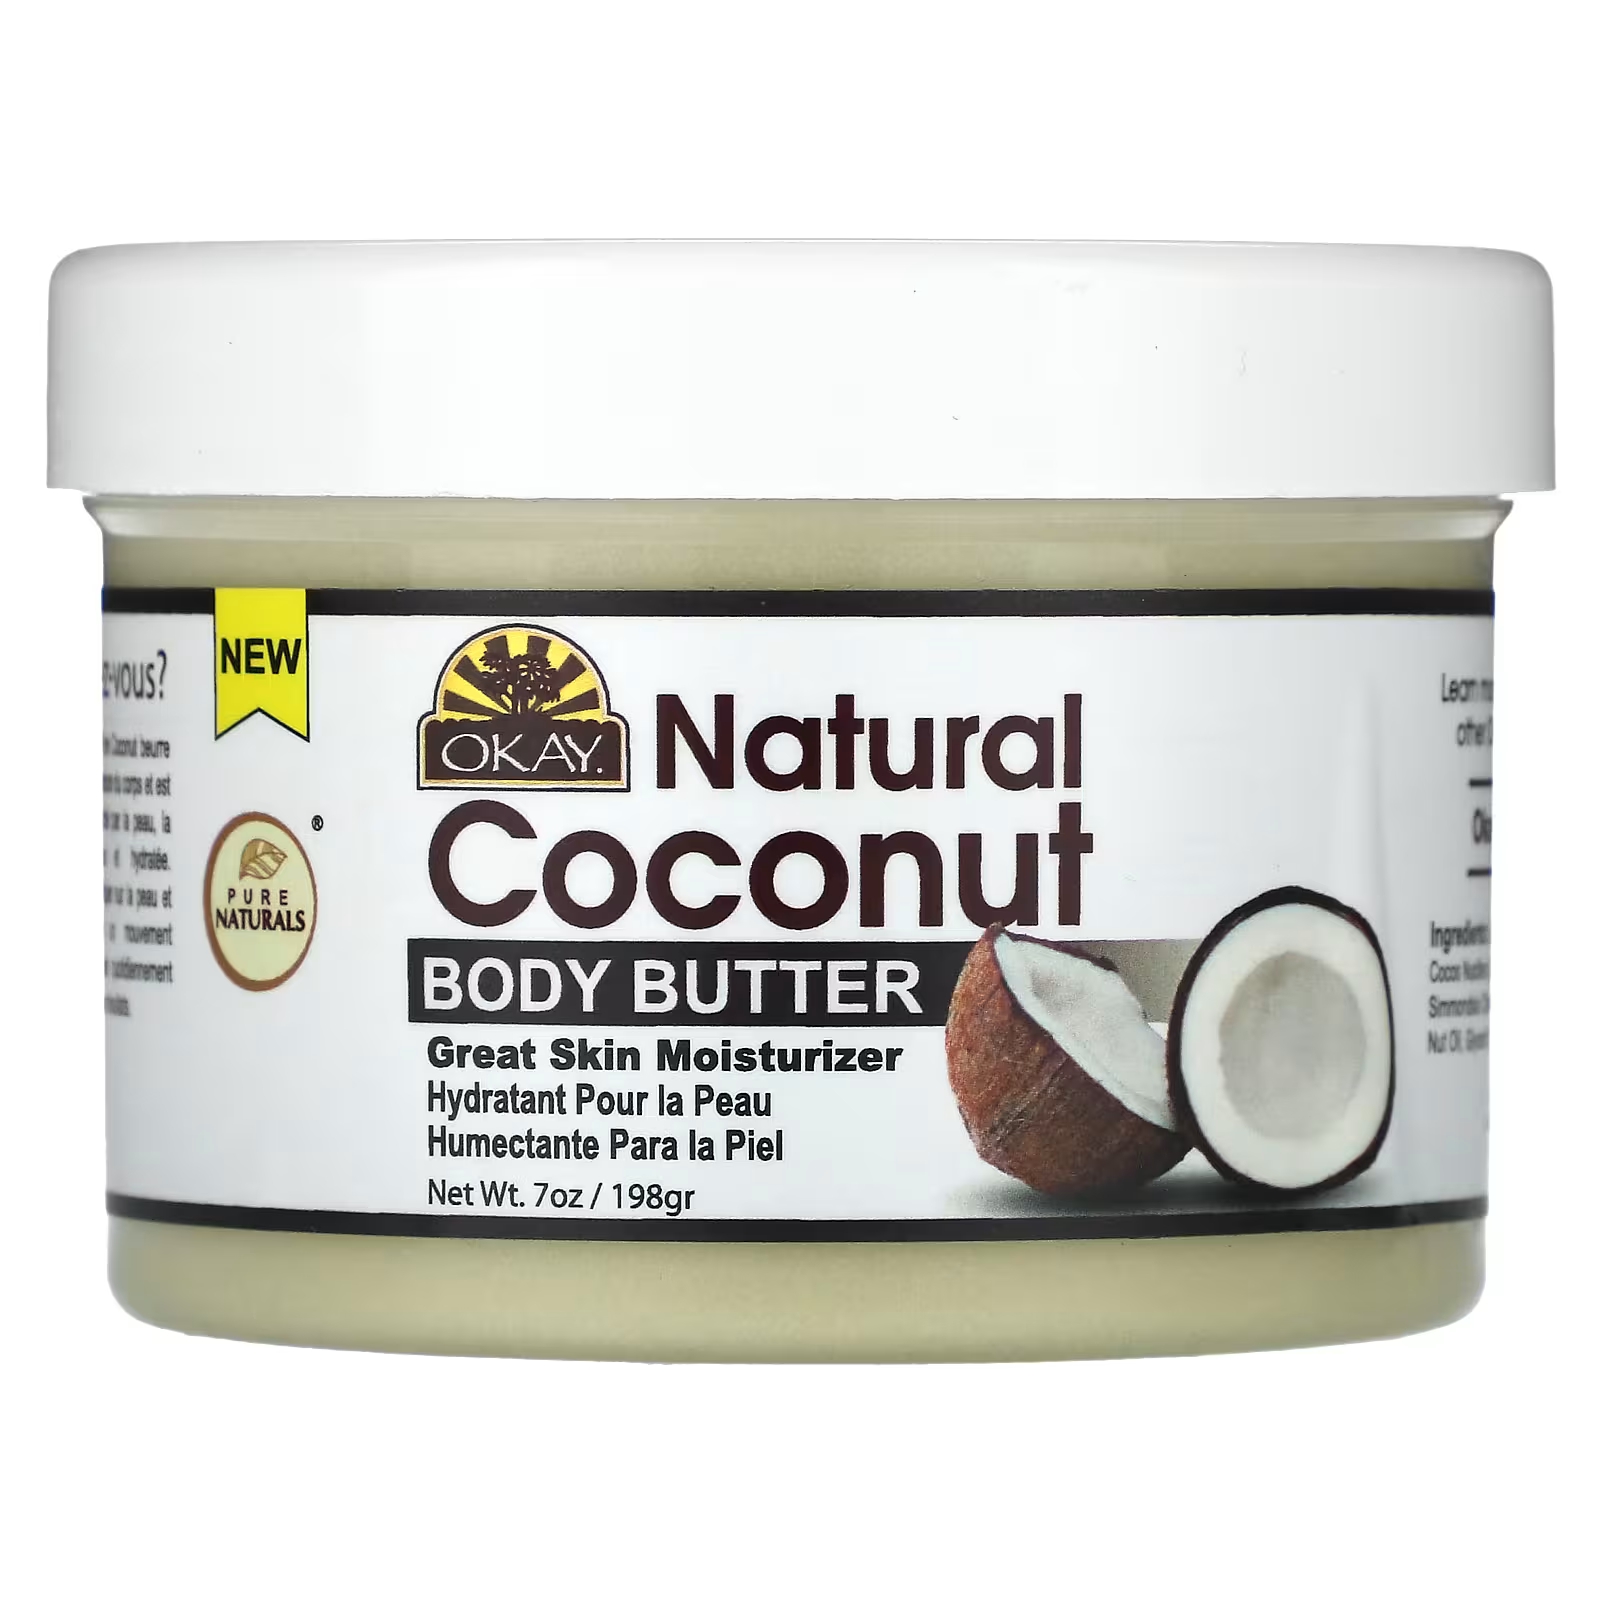 Кокосовое масло Okay Pure Naturals для тела, 198 г кокосовое масло okay pure naturals для тела 198 г